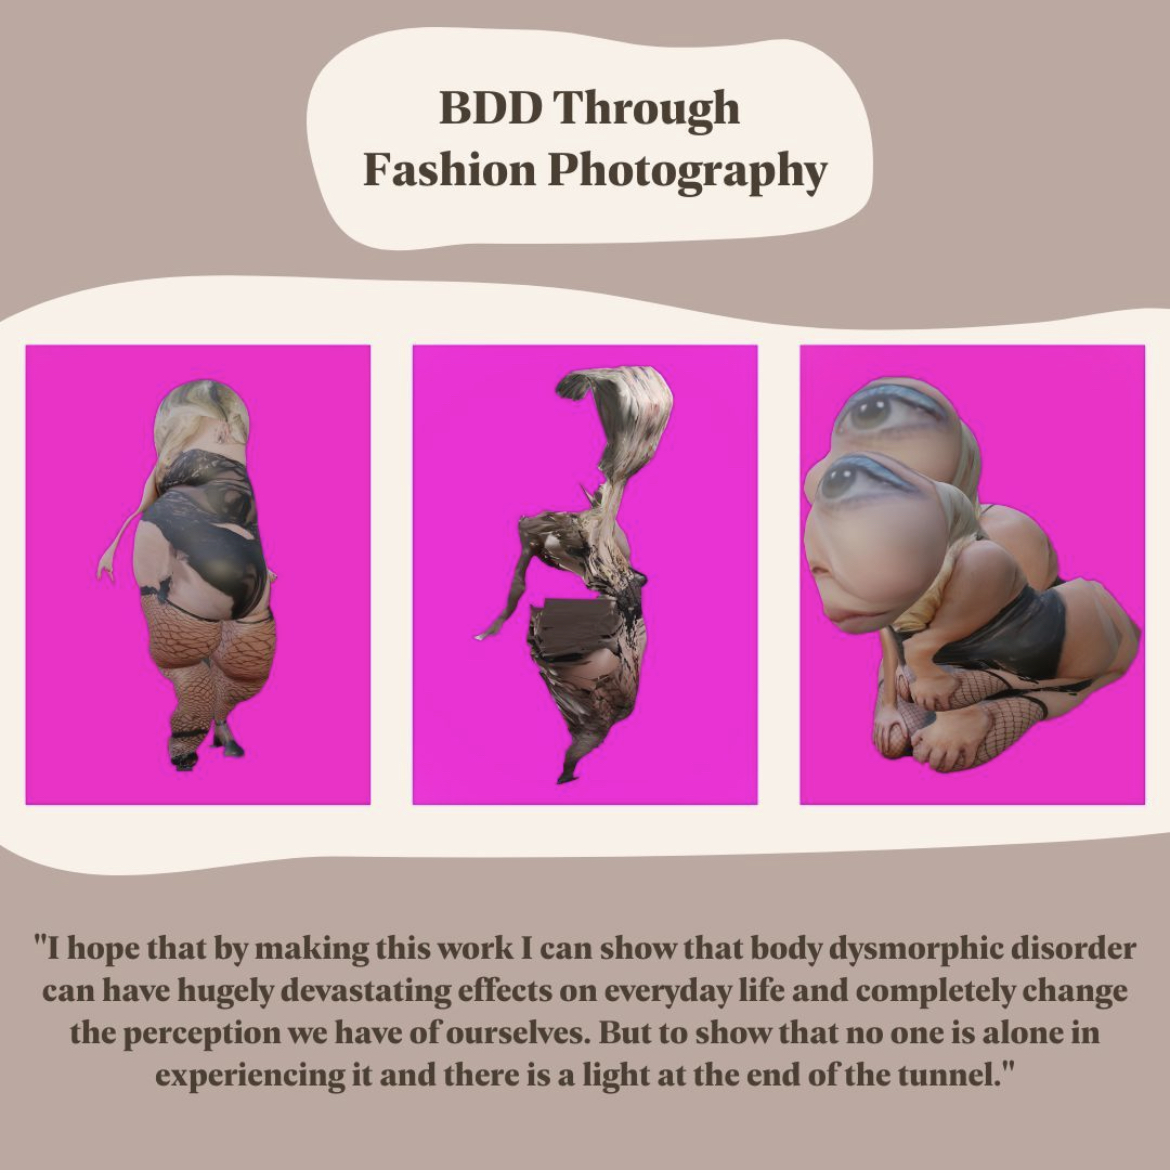 BDD through fashion photography